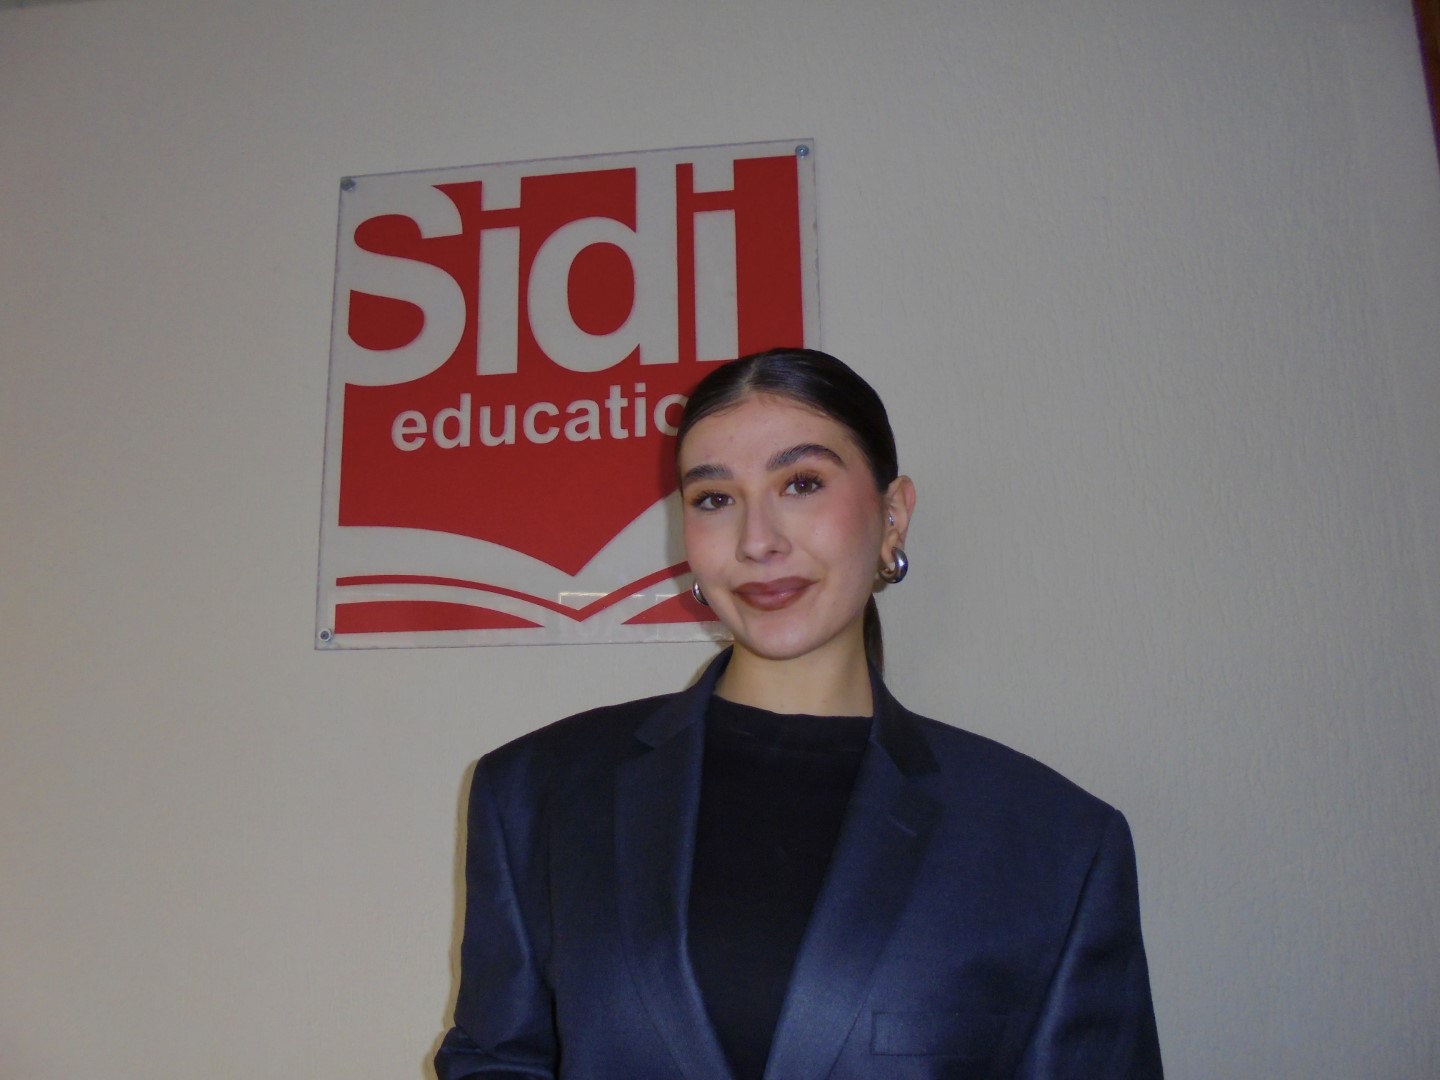 Studentja e Fakultetit Gjuhë Angleze në UBT, Leonë Hasani punësohet si mësuese në “Sidi Education”